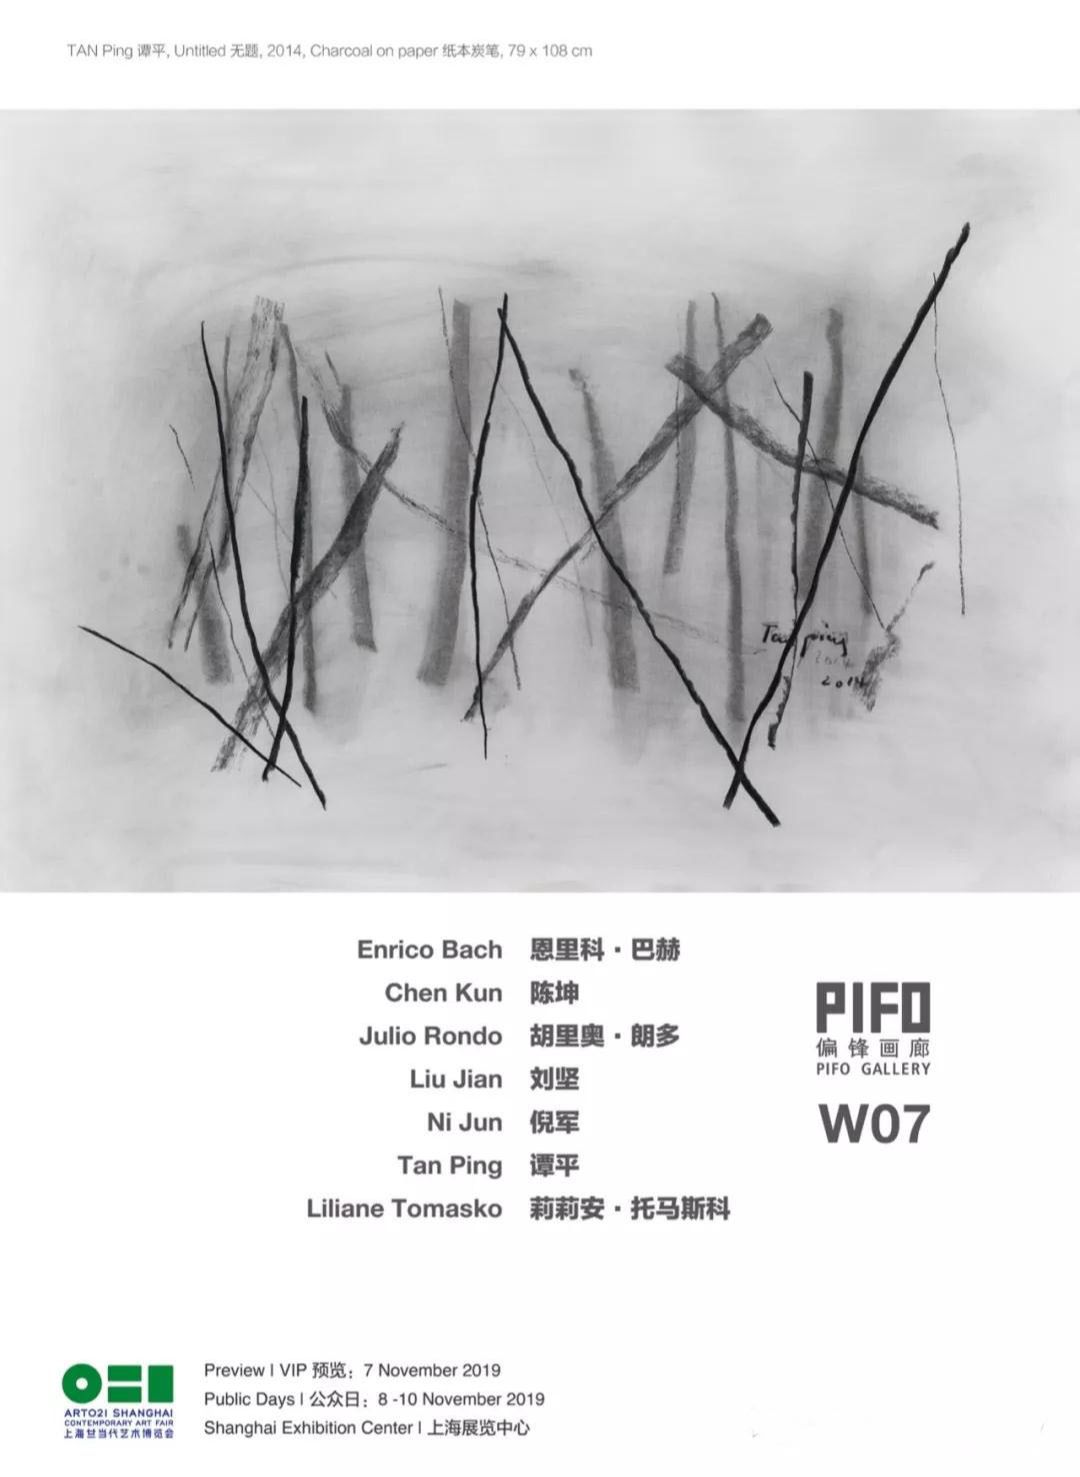 2019 ART021 上海廿一当代艺术博览会·偏锋画廊